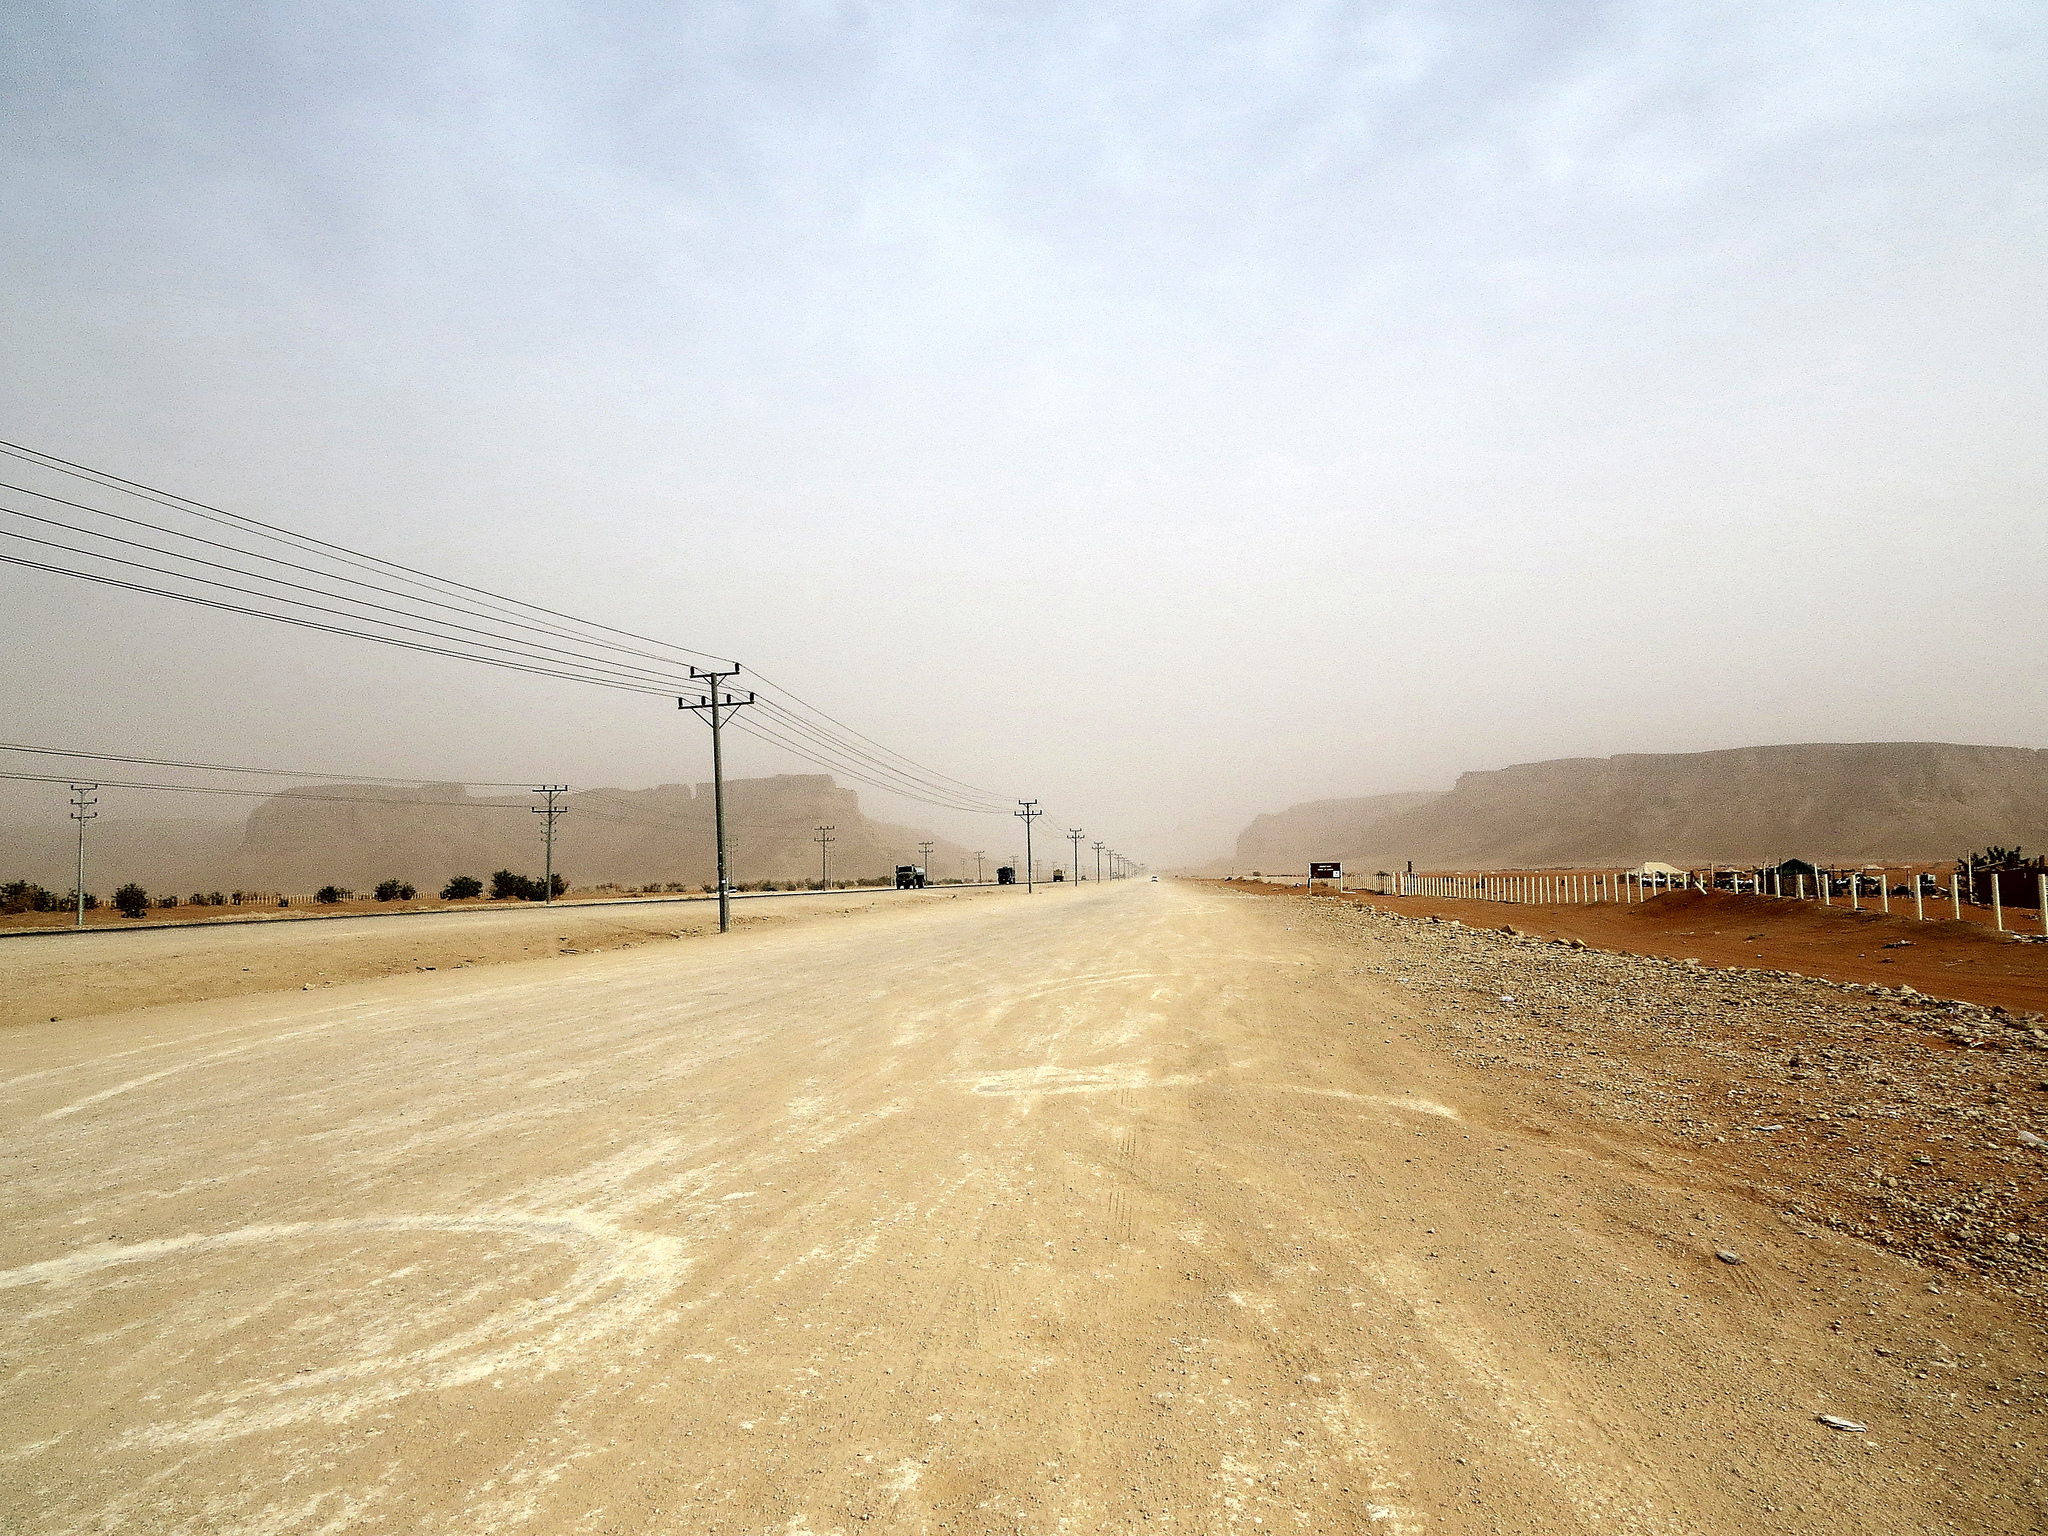 Фото пользователя Flickr Эдварда Мусиака. Саудовская Аравия, 13 января 2013 года. CC- BY.2.0